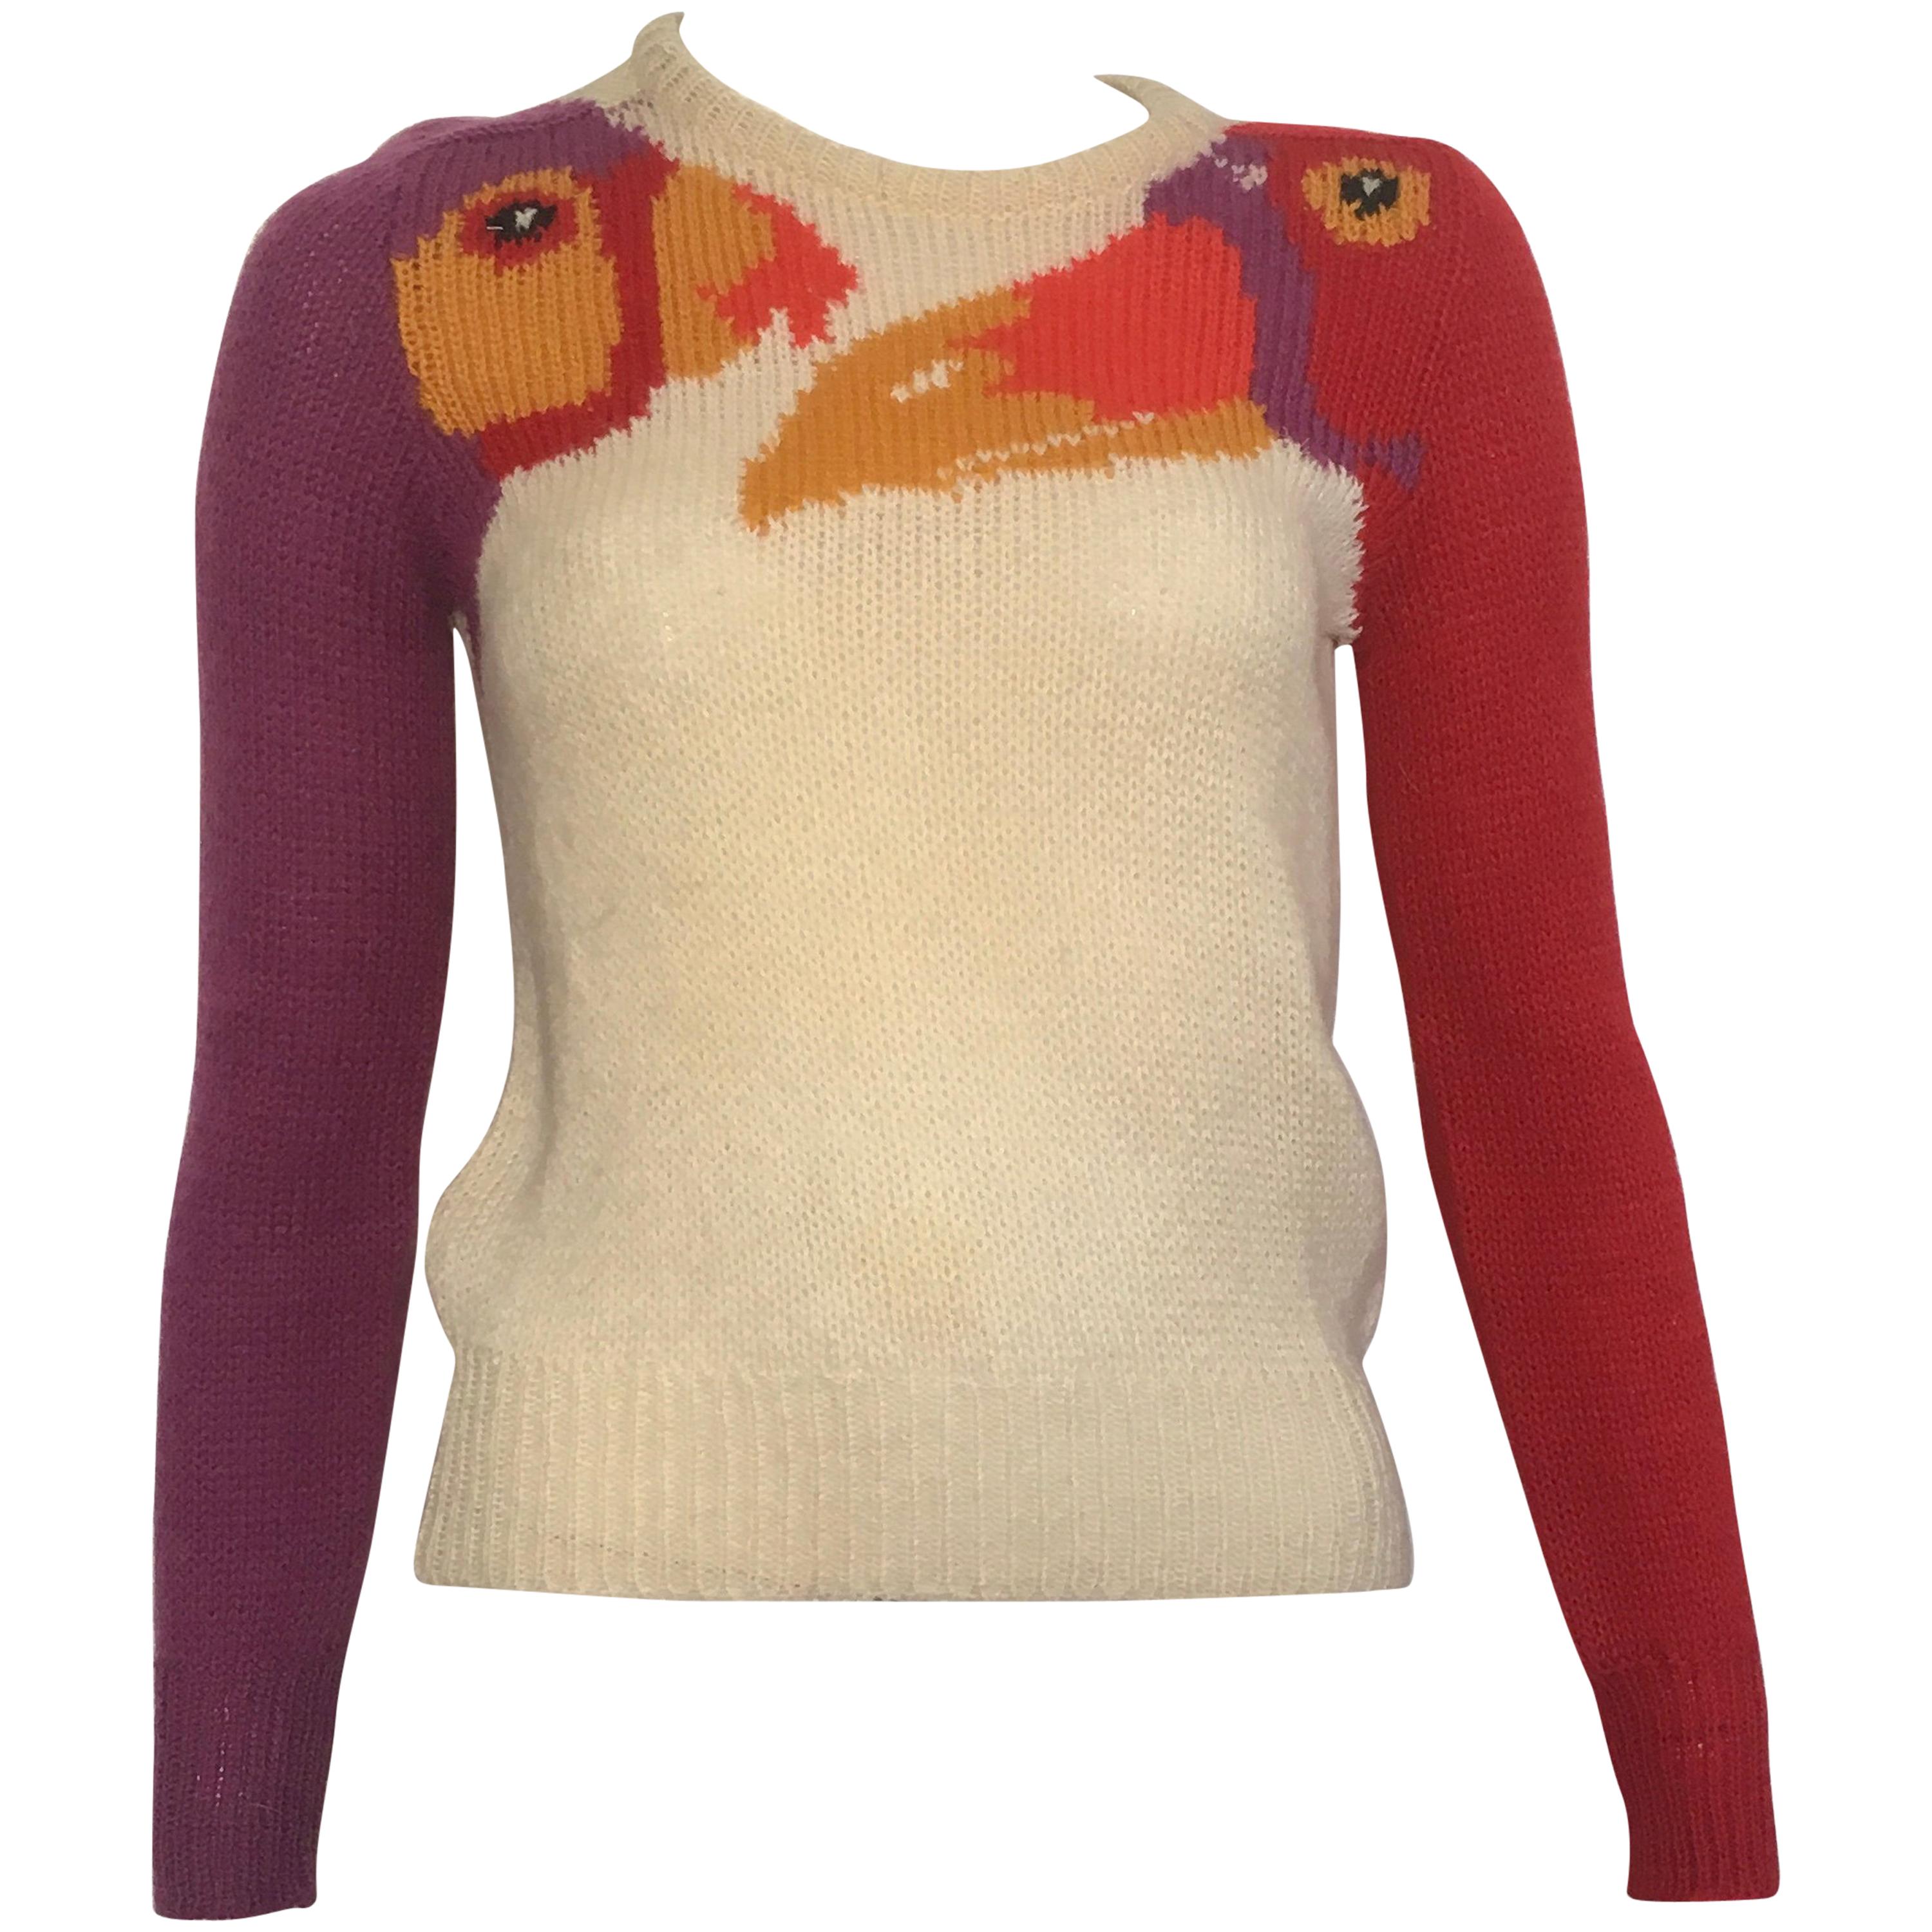 Krizia Maglia 1980s Exotic Birds Iconic Pullover Sweater Size Small.